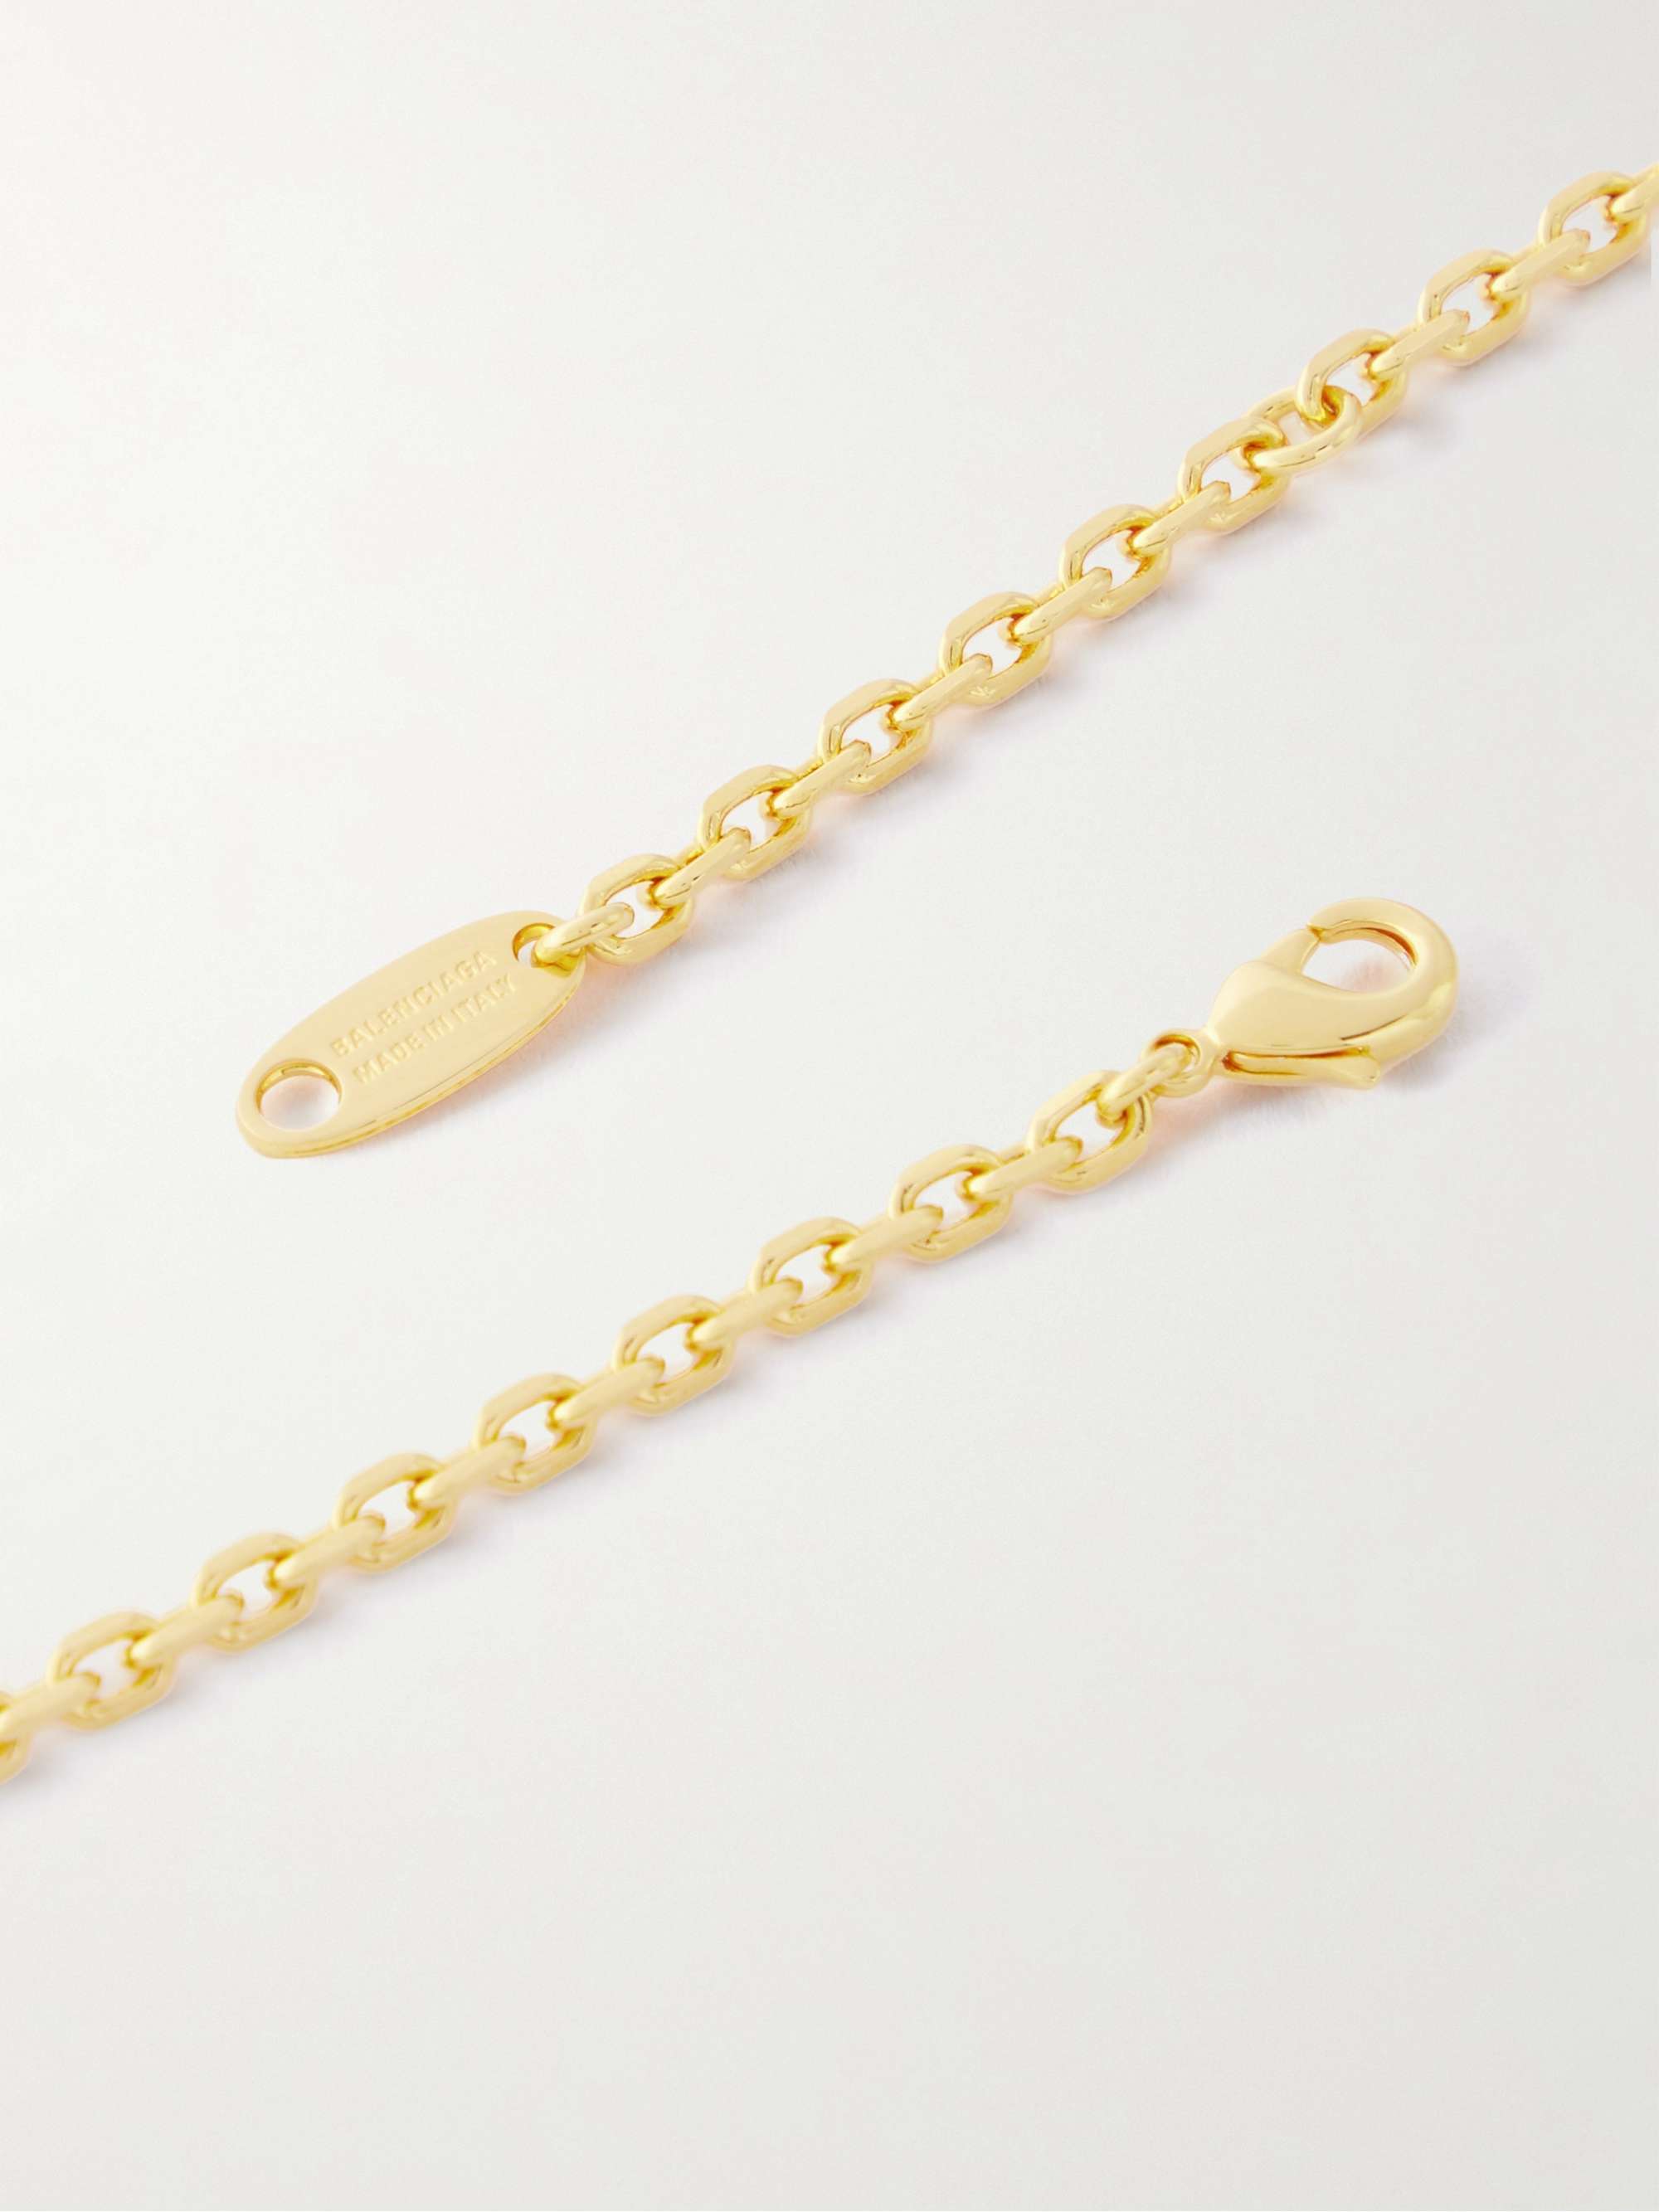 BALENCIAGA Engraved Gold-Tone Pendant Necklace